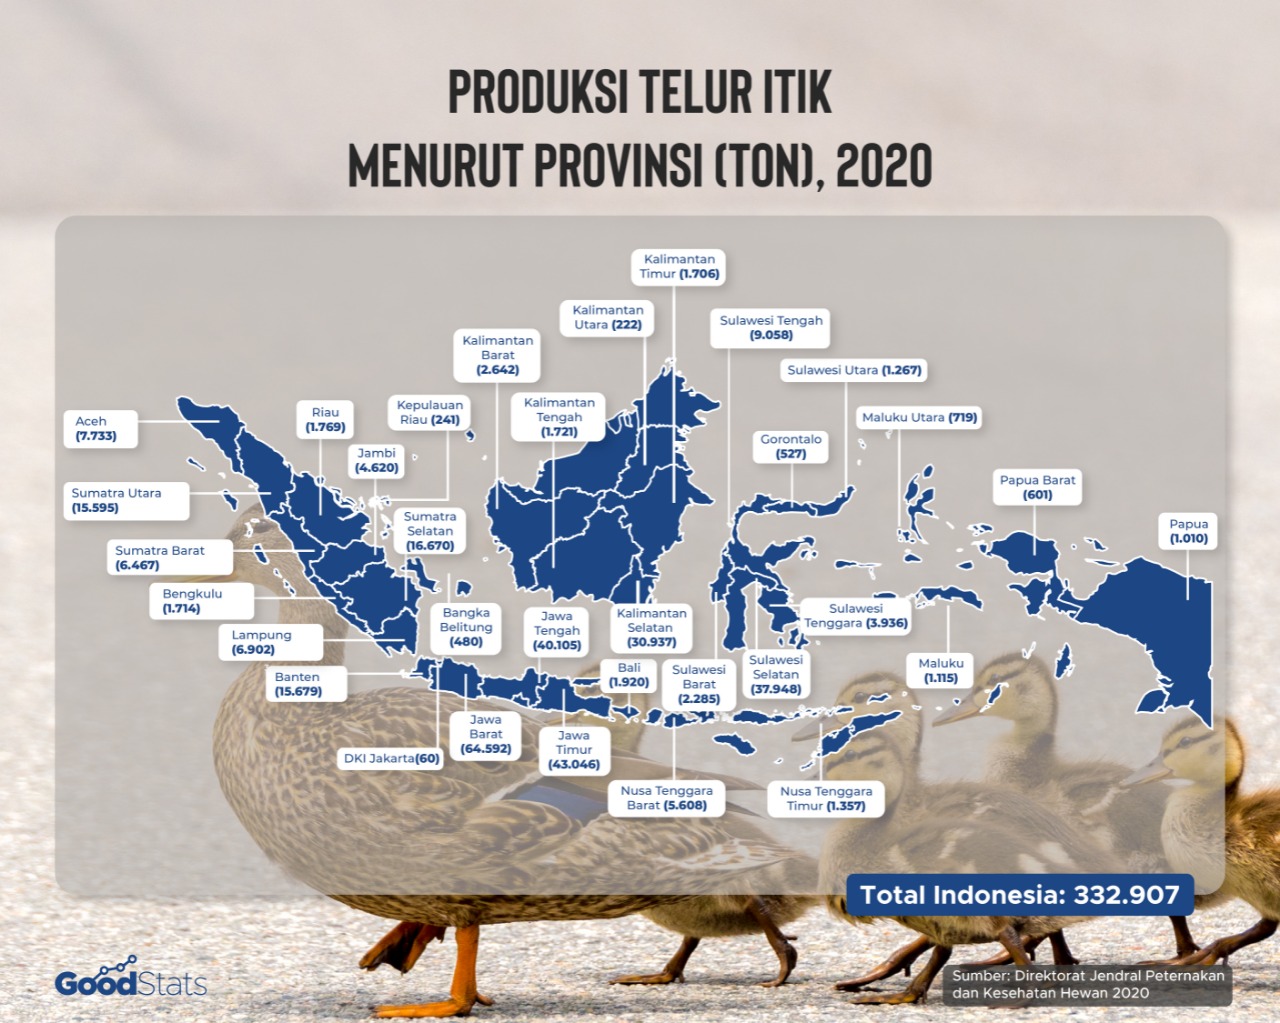 Produksi telur itik di Indonesia pada selama tahun 2020. | Infografis ; GoodStats/Angelia